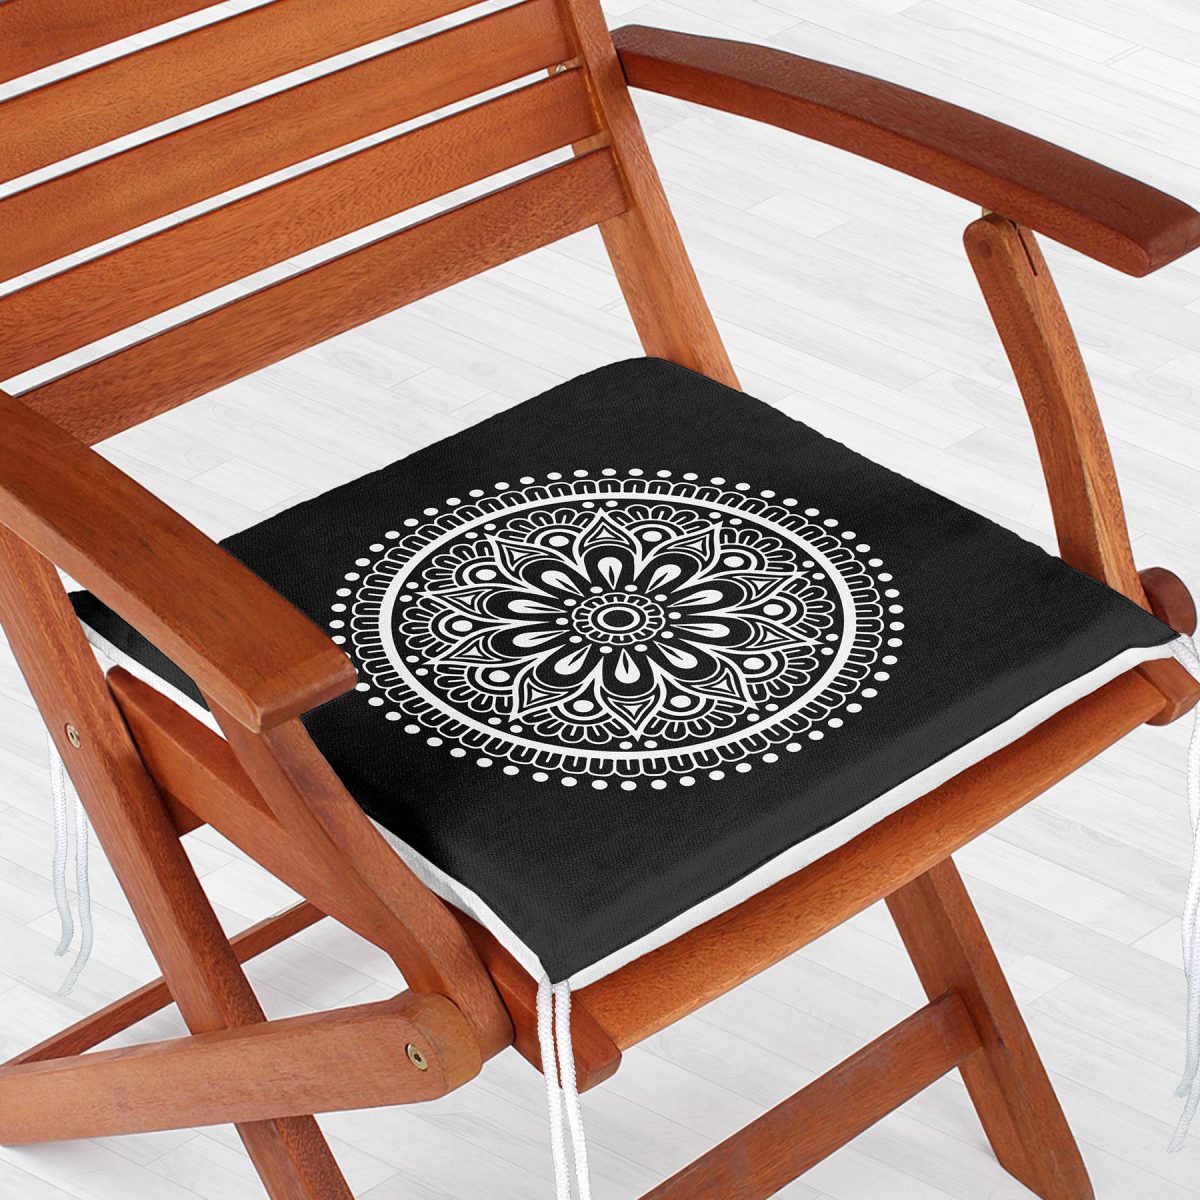 Siyah Beyaz Çiçek Desenli Mandala Motifli Fermuarlı Sandalye Minderi Realhomes